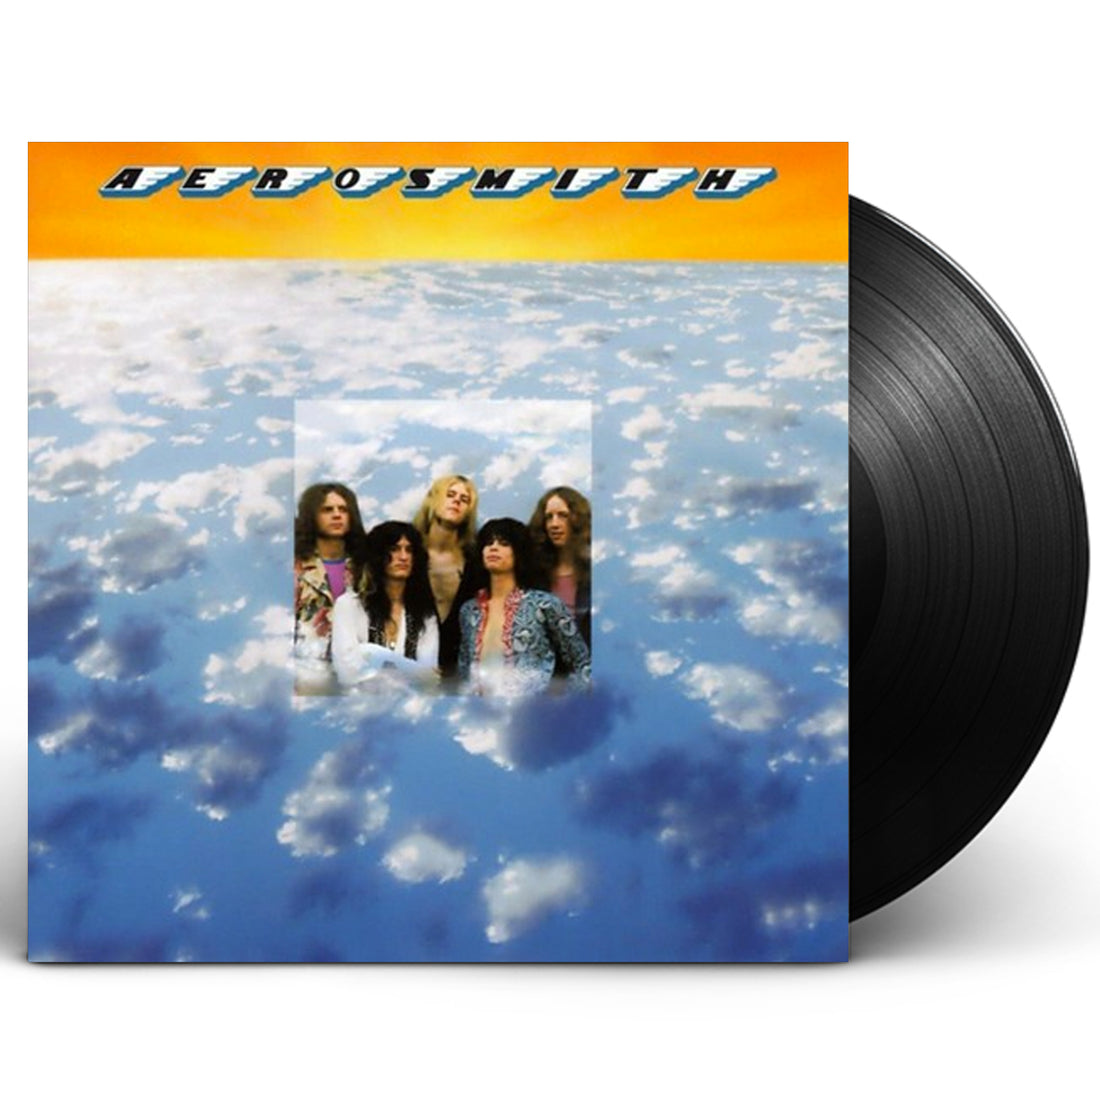 Aerosmith "Aerosmith" LP Vinyl